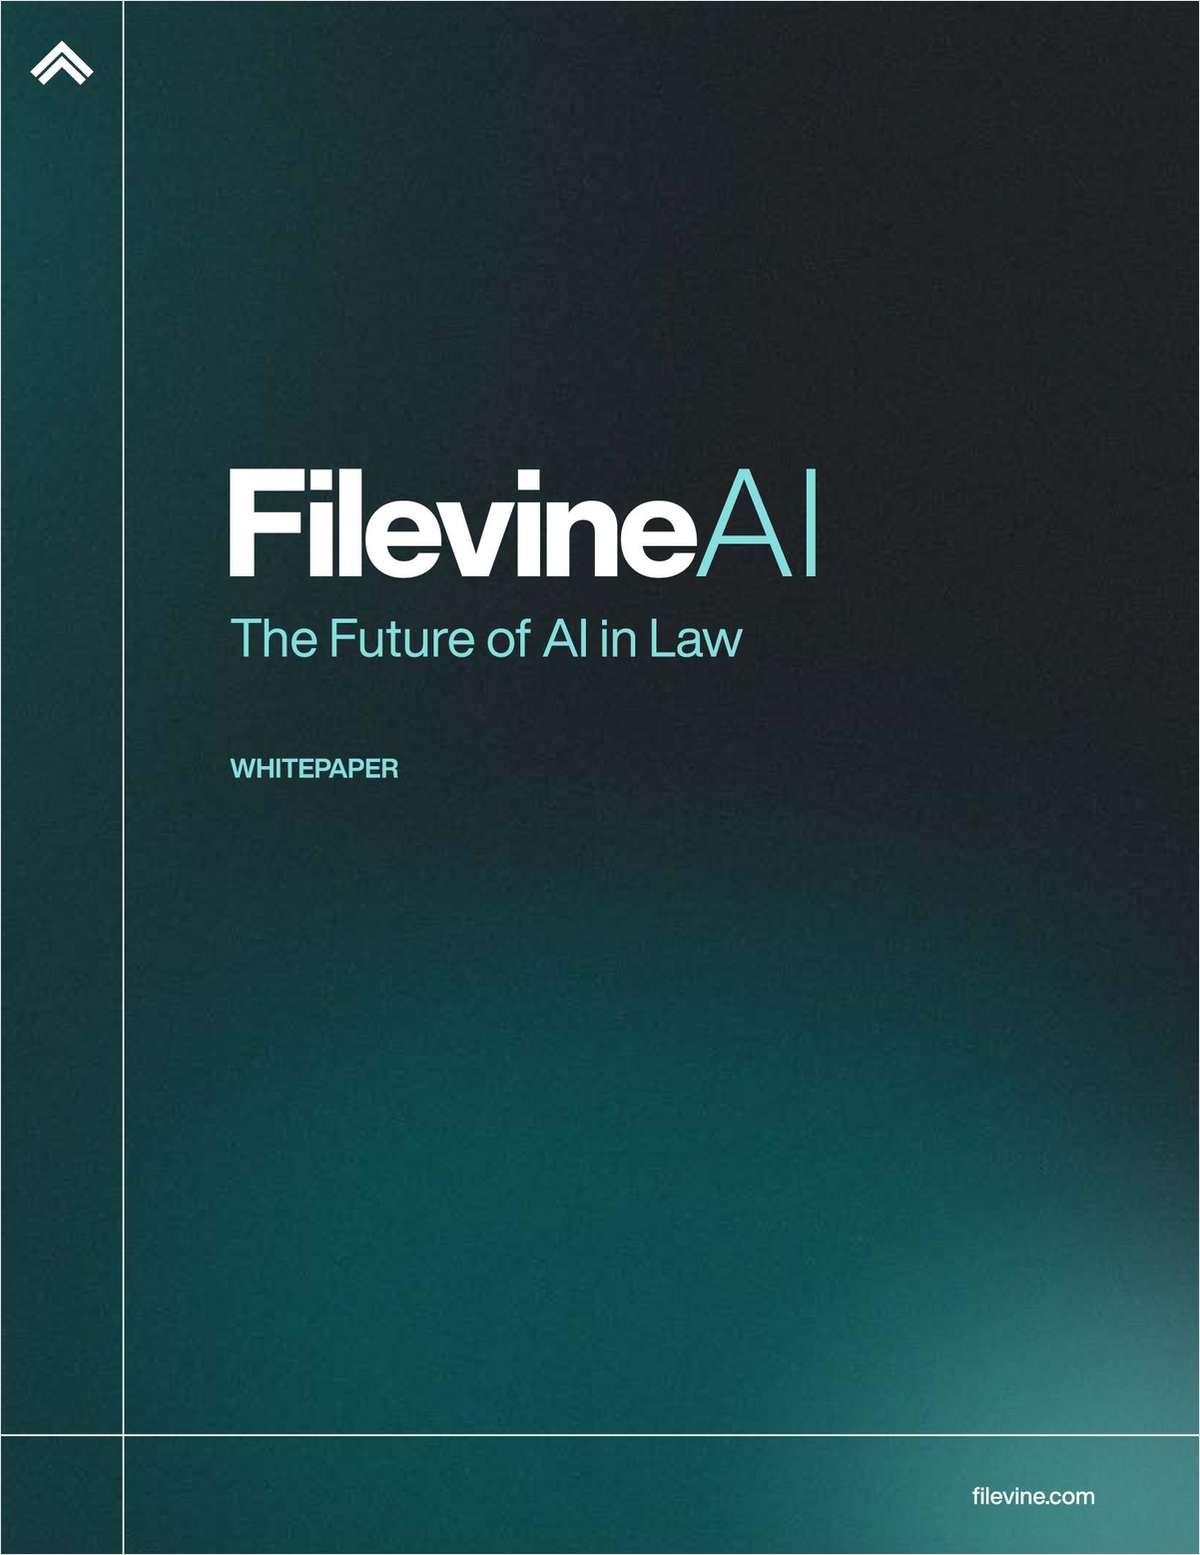 The Future of AI in Law